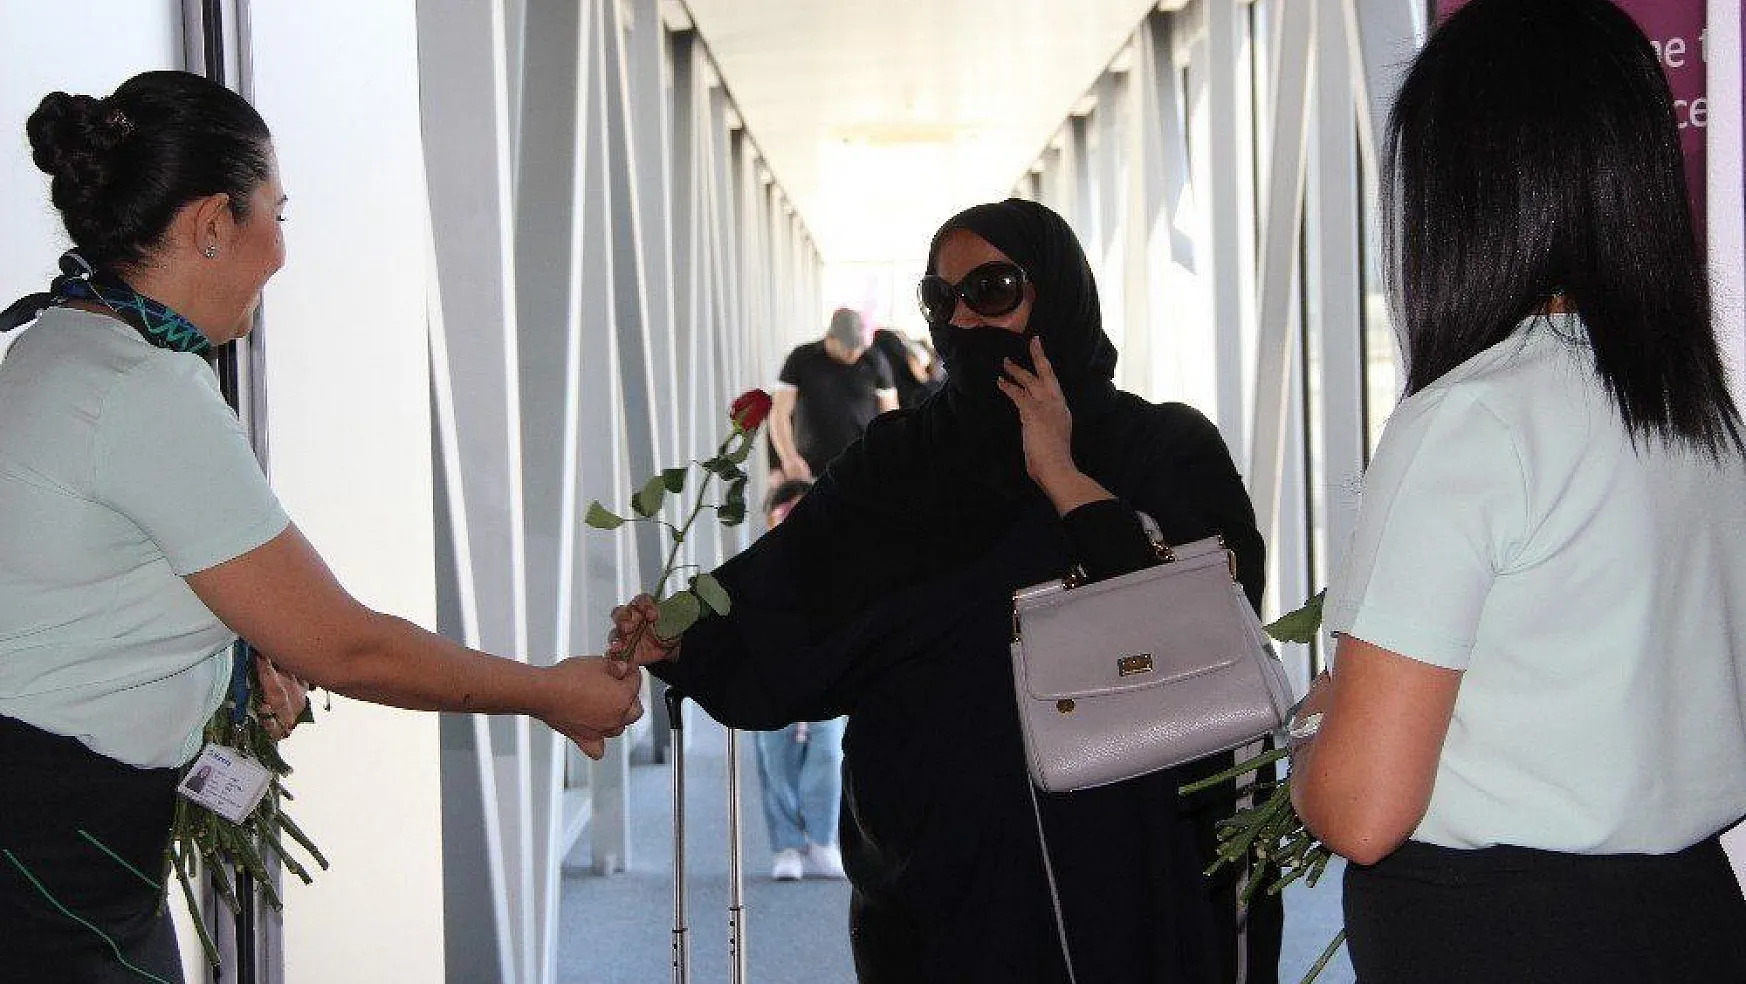 Katarlı turistler kırmızı güllerle karşılandı